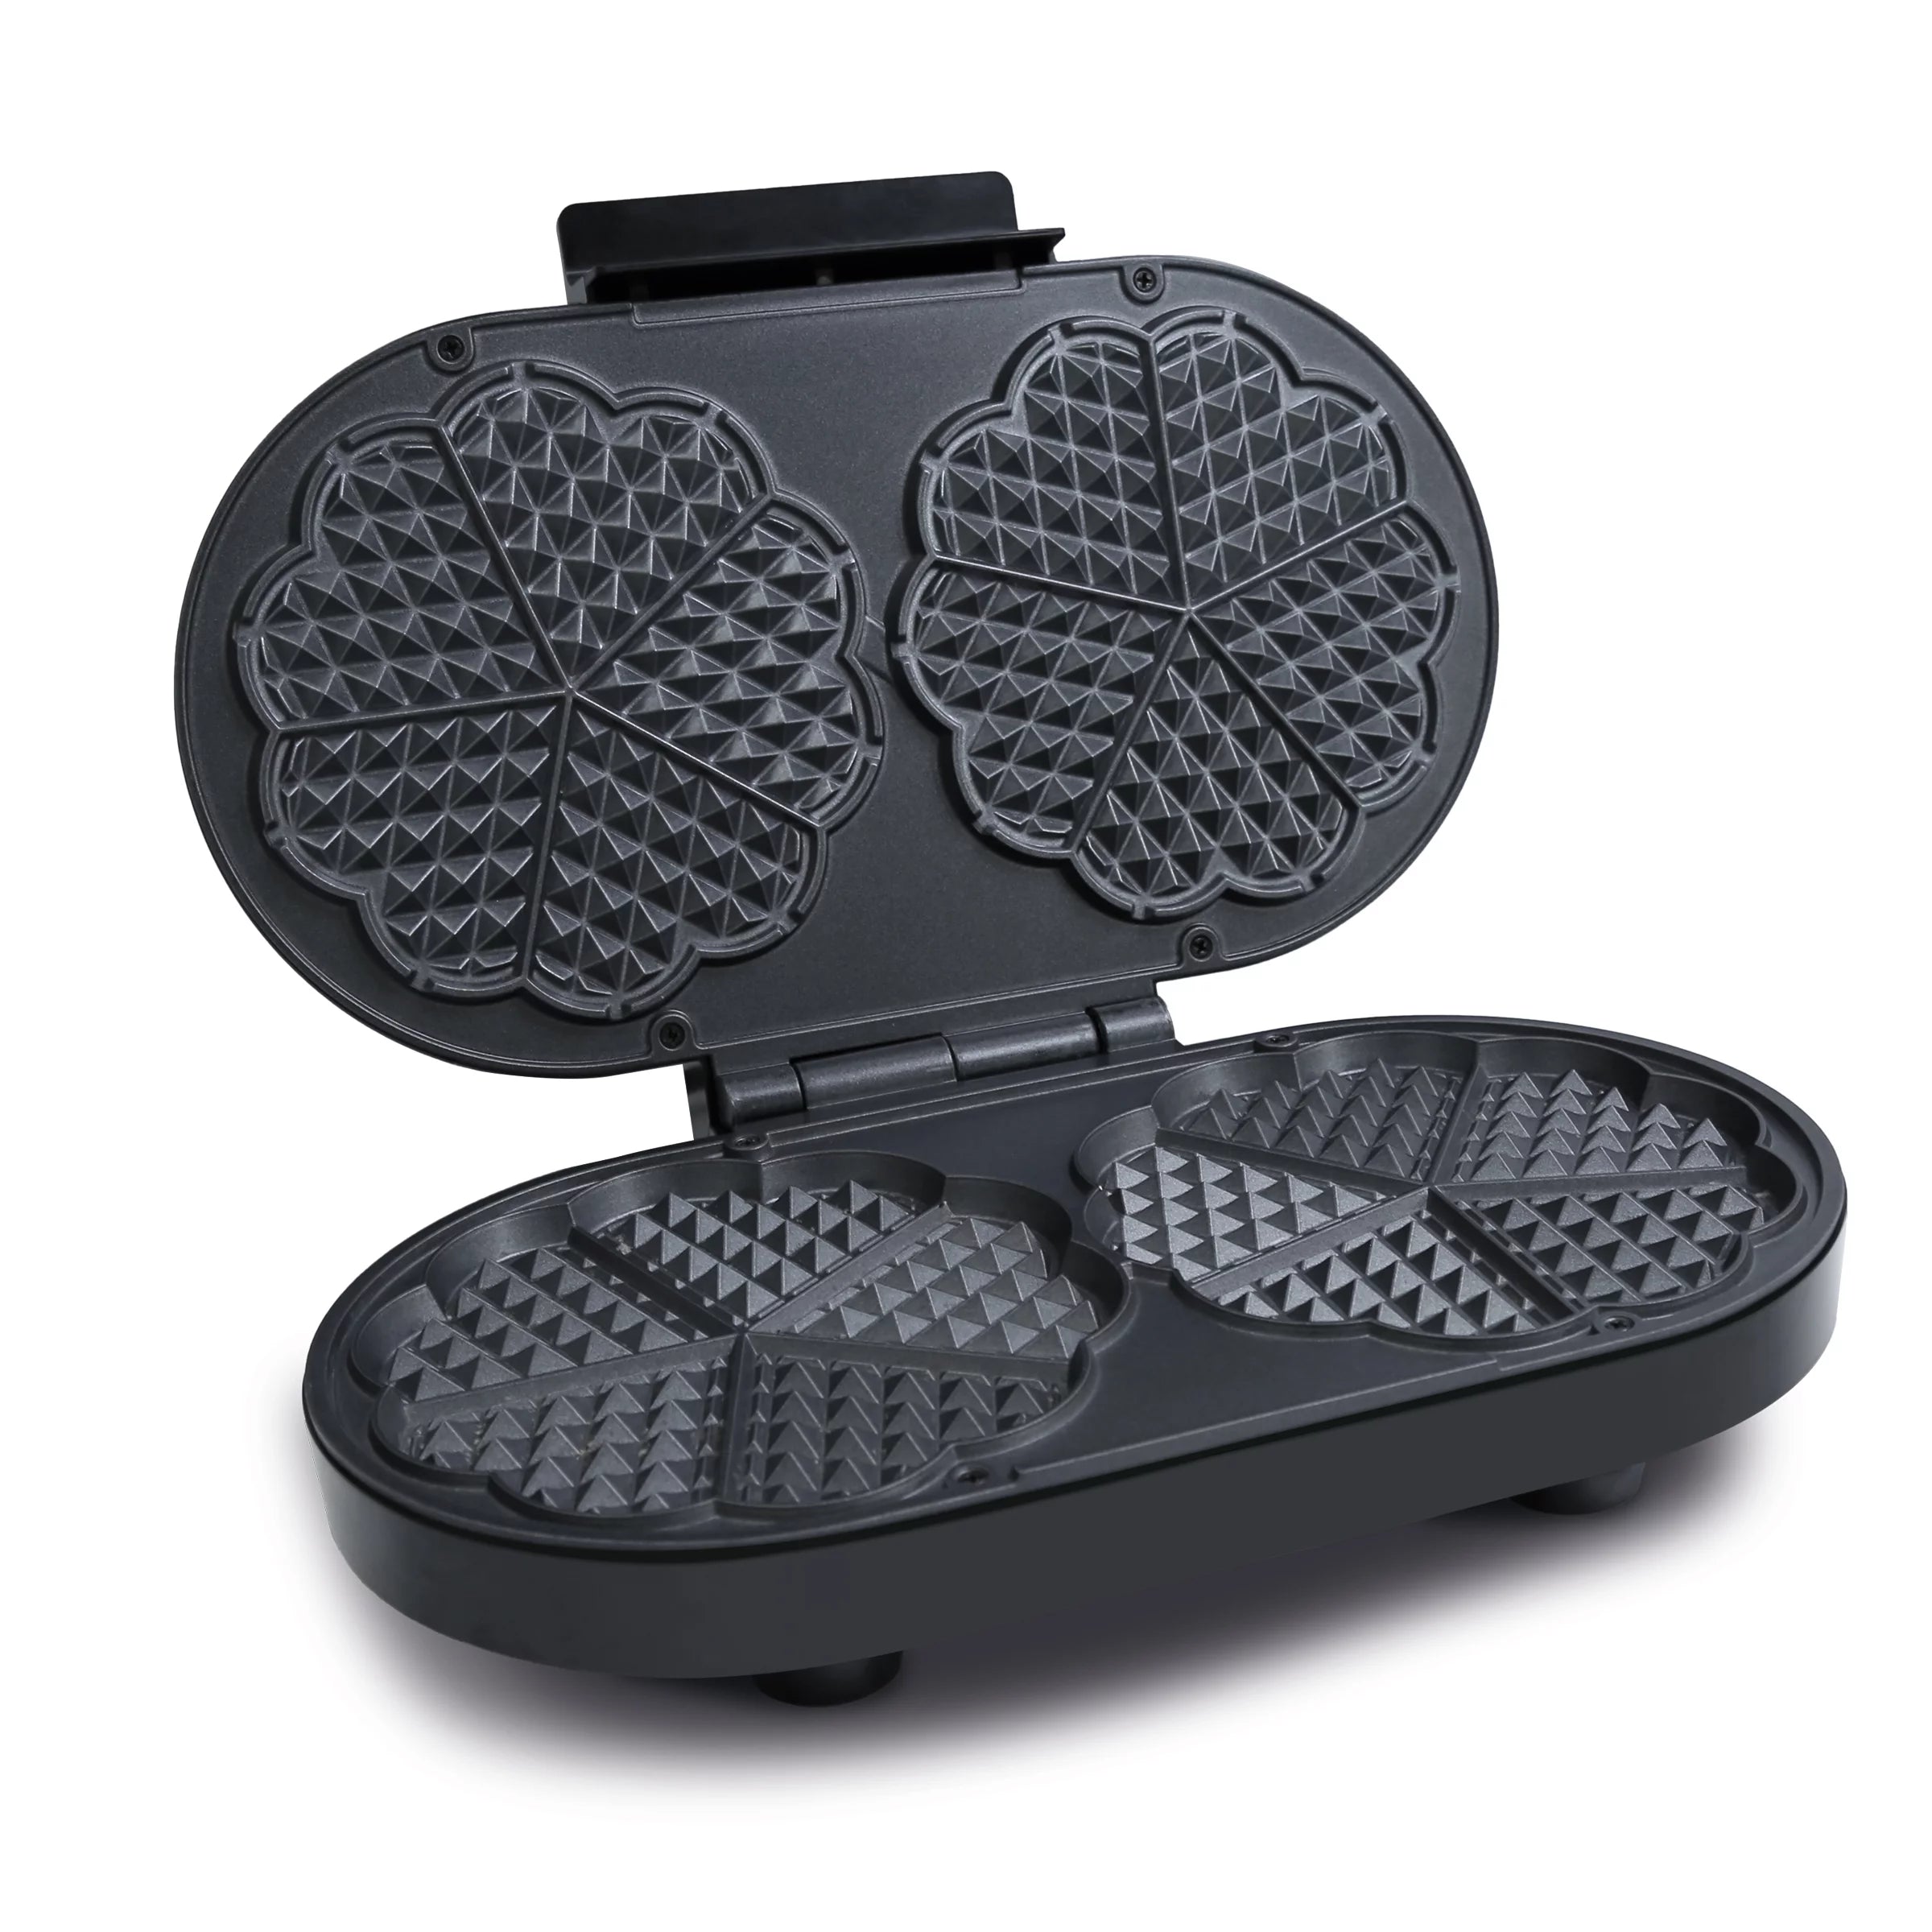 Ga822-3l2245 Máquina para waffles! 220 volts Medida 12.2x12.2x8.8cm  Disponible en negro Personalizado calavera Ideal para el desayuno…